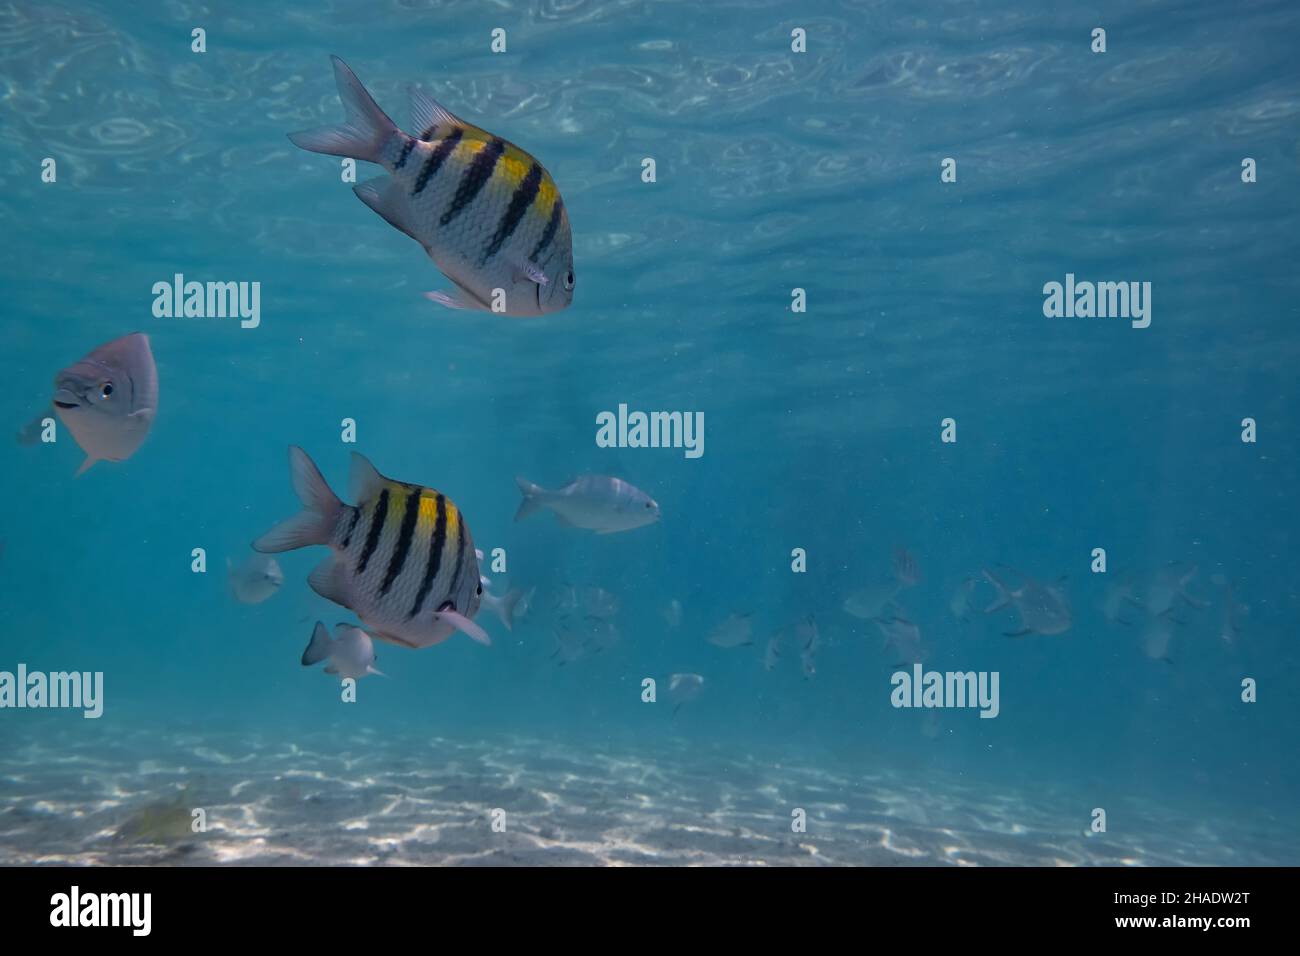 Prise de vue sous-marine des principaux poissons sergents nageant dans les eaux bleues Banque D'Images